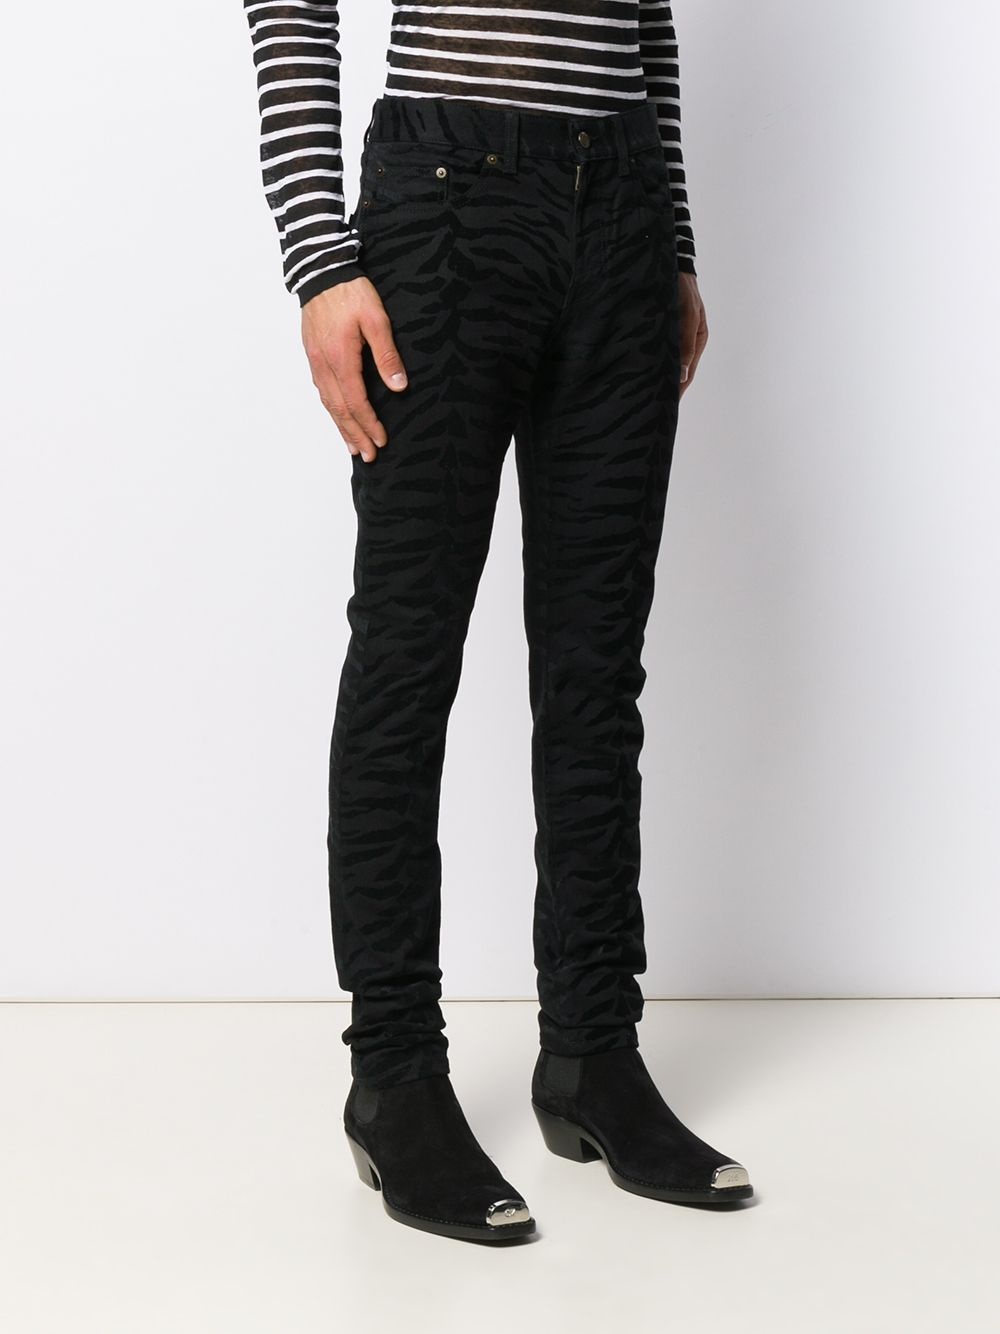 zebra printed skinny jeans - 3